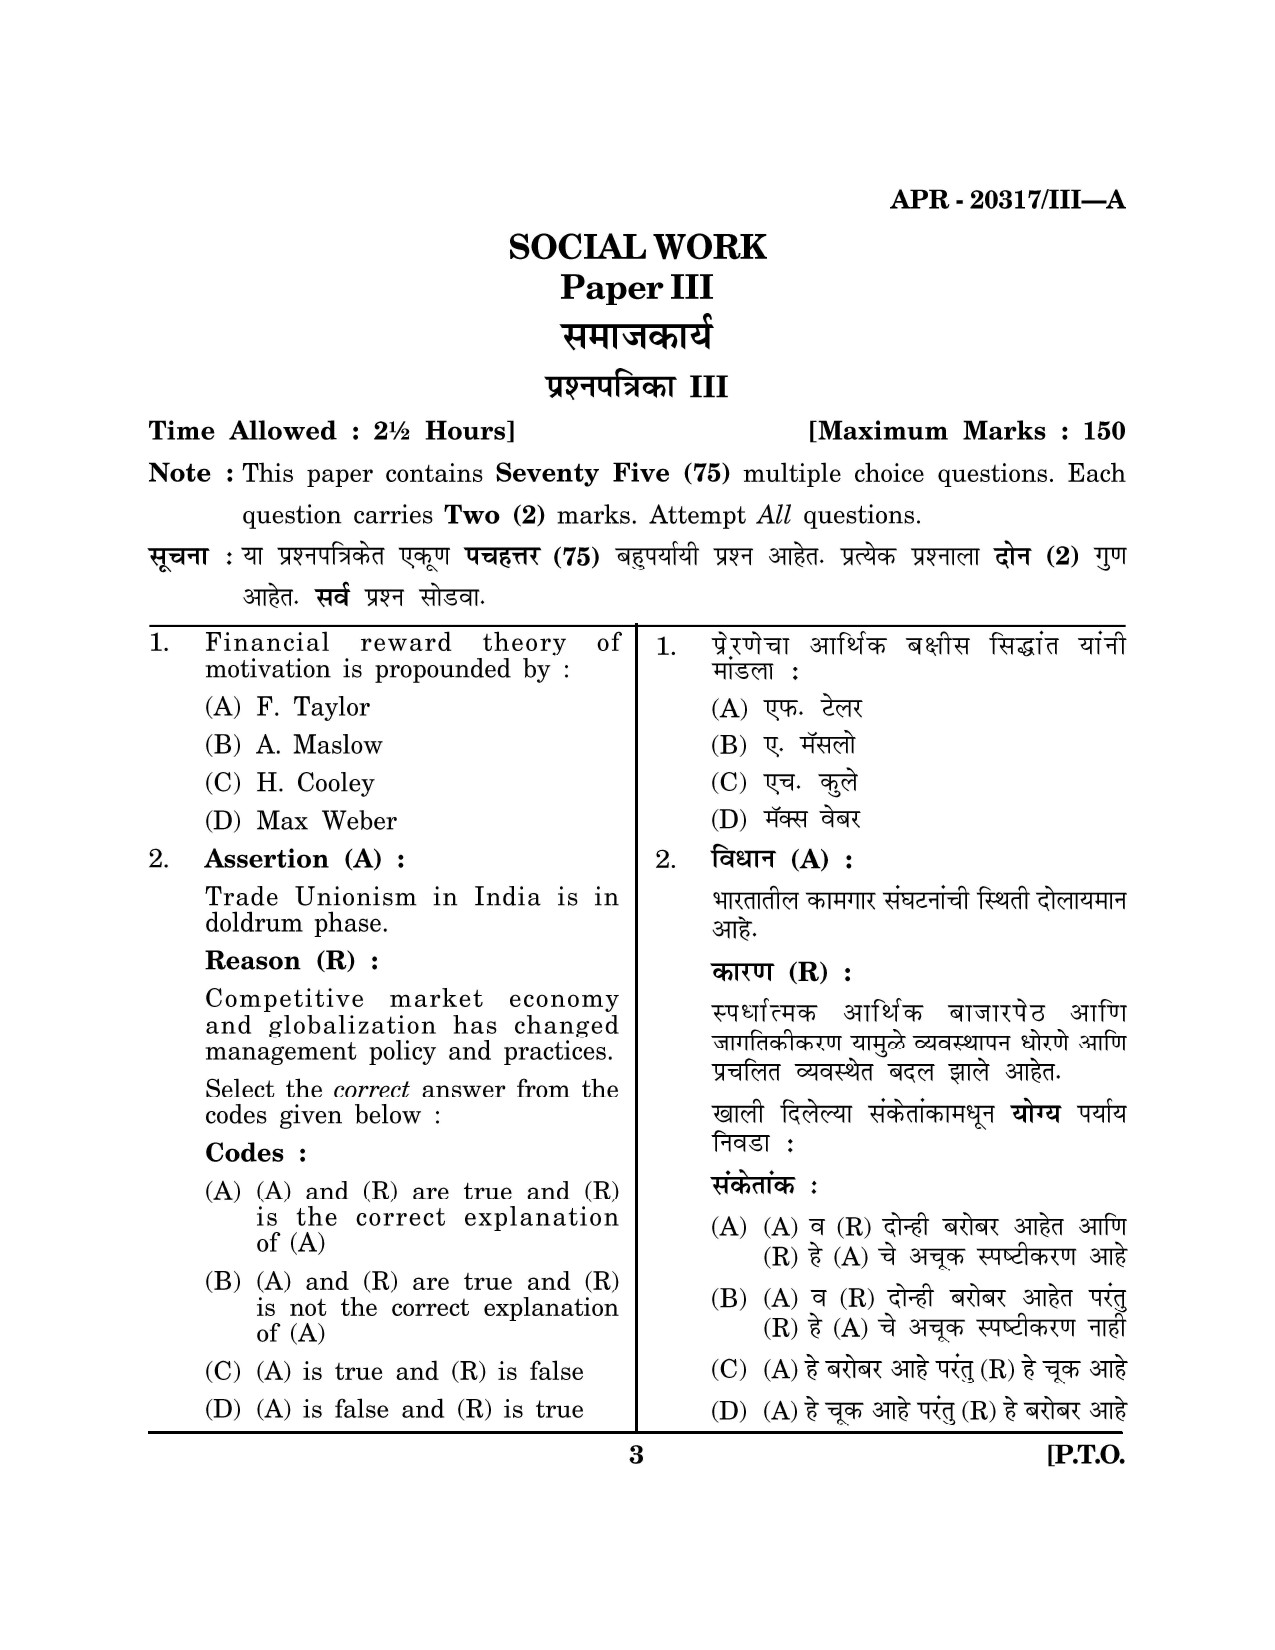 Maharashtra SET Social Work Question Paper III April 2017 2